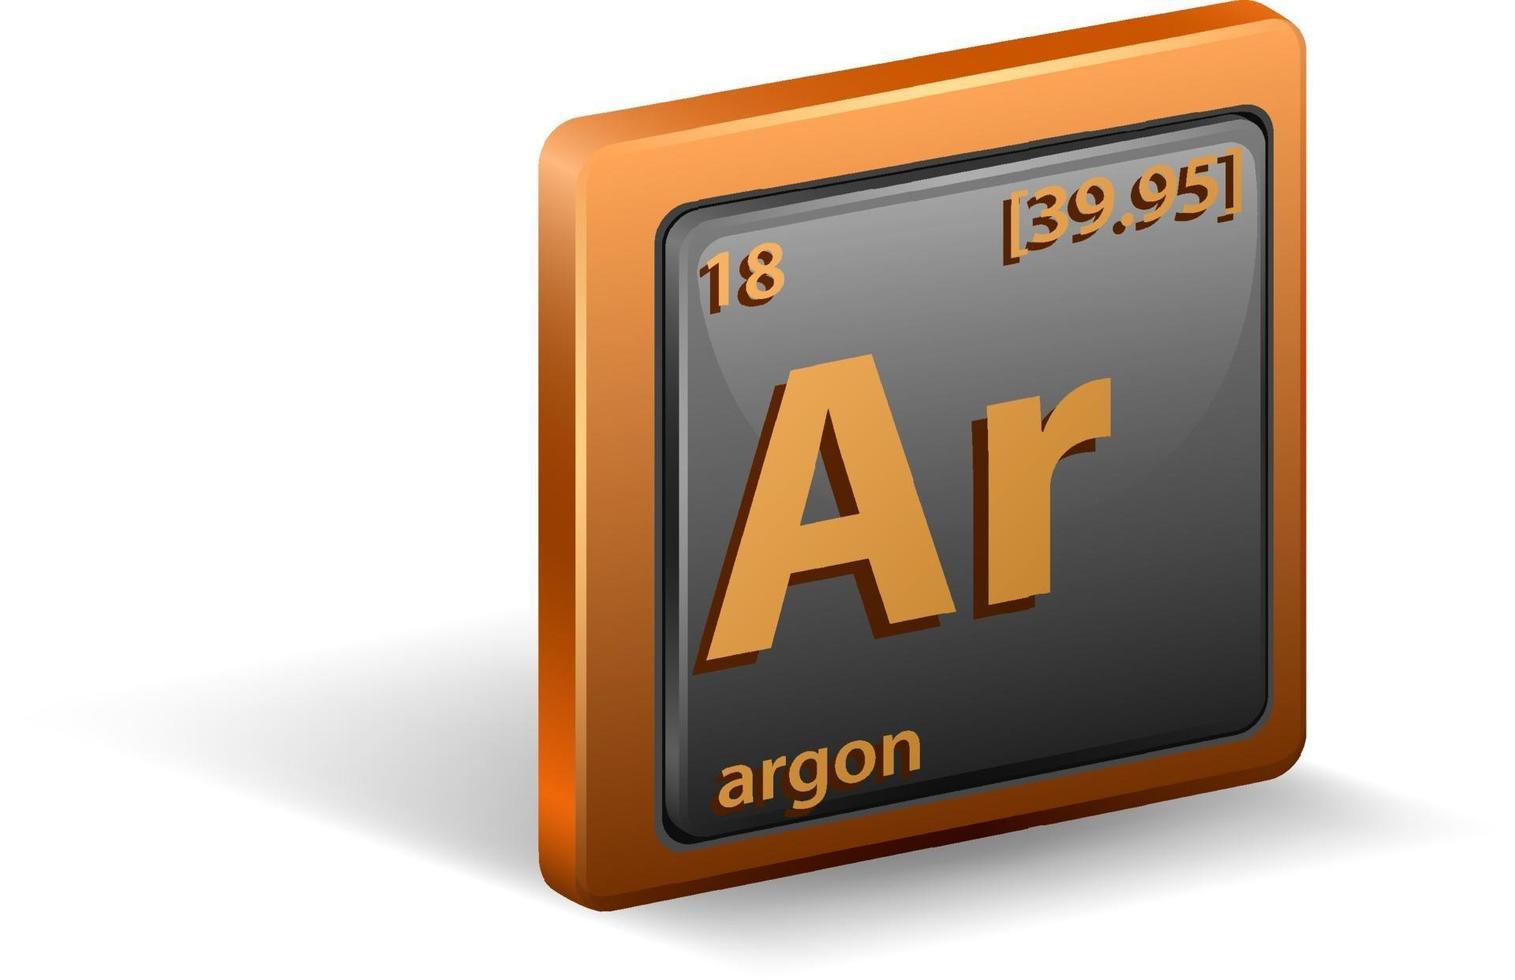 élément chimique argon. symbole chimique avec numéro atomique et masse atomique. vecteur